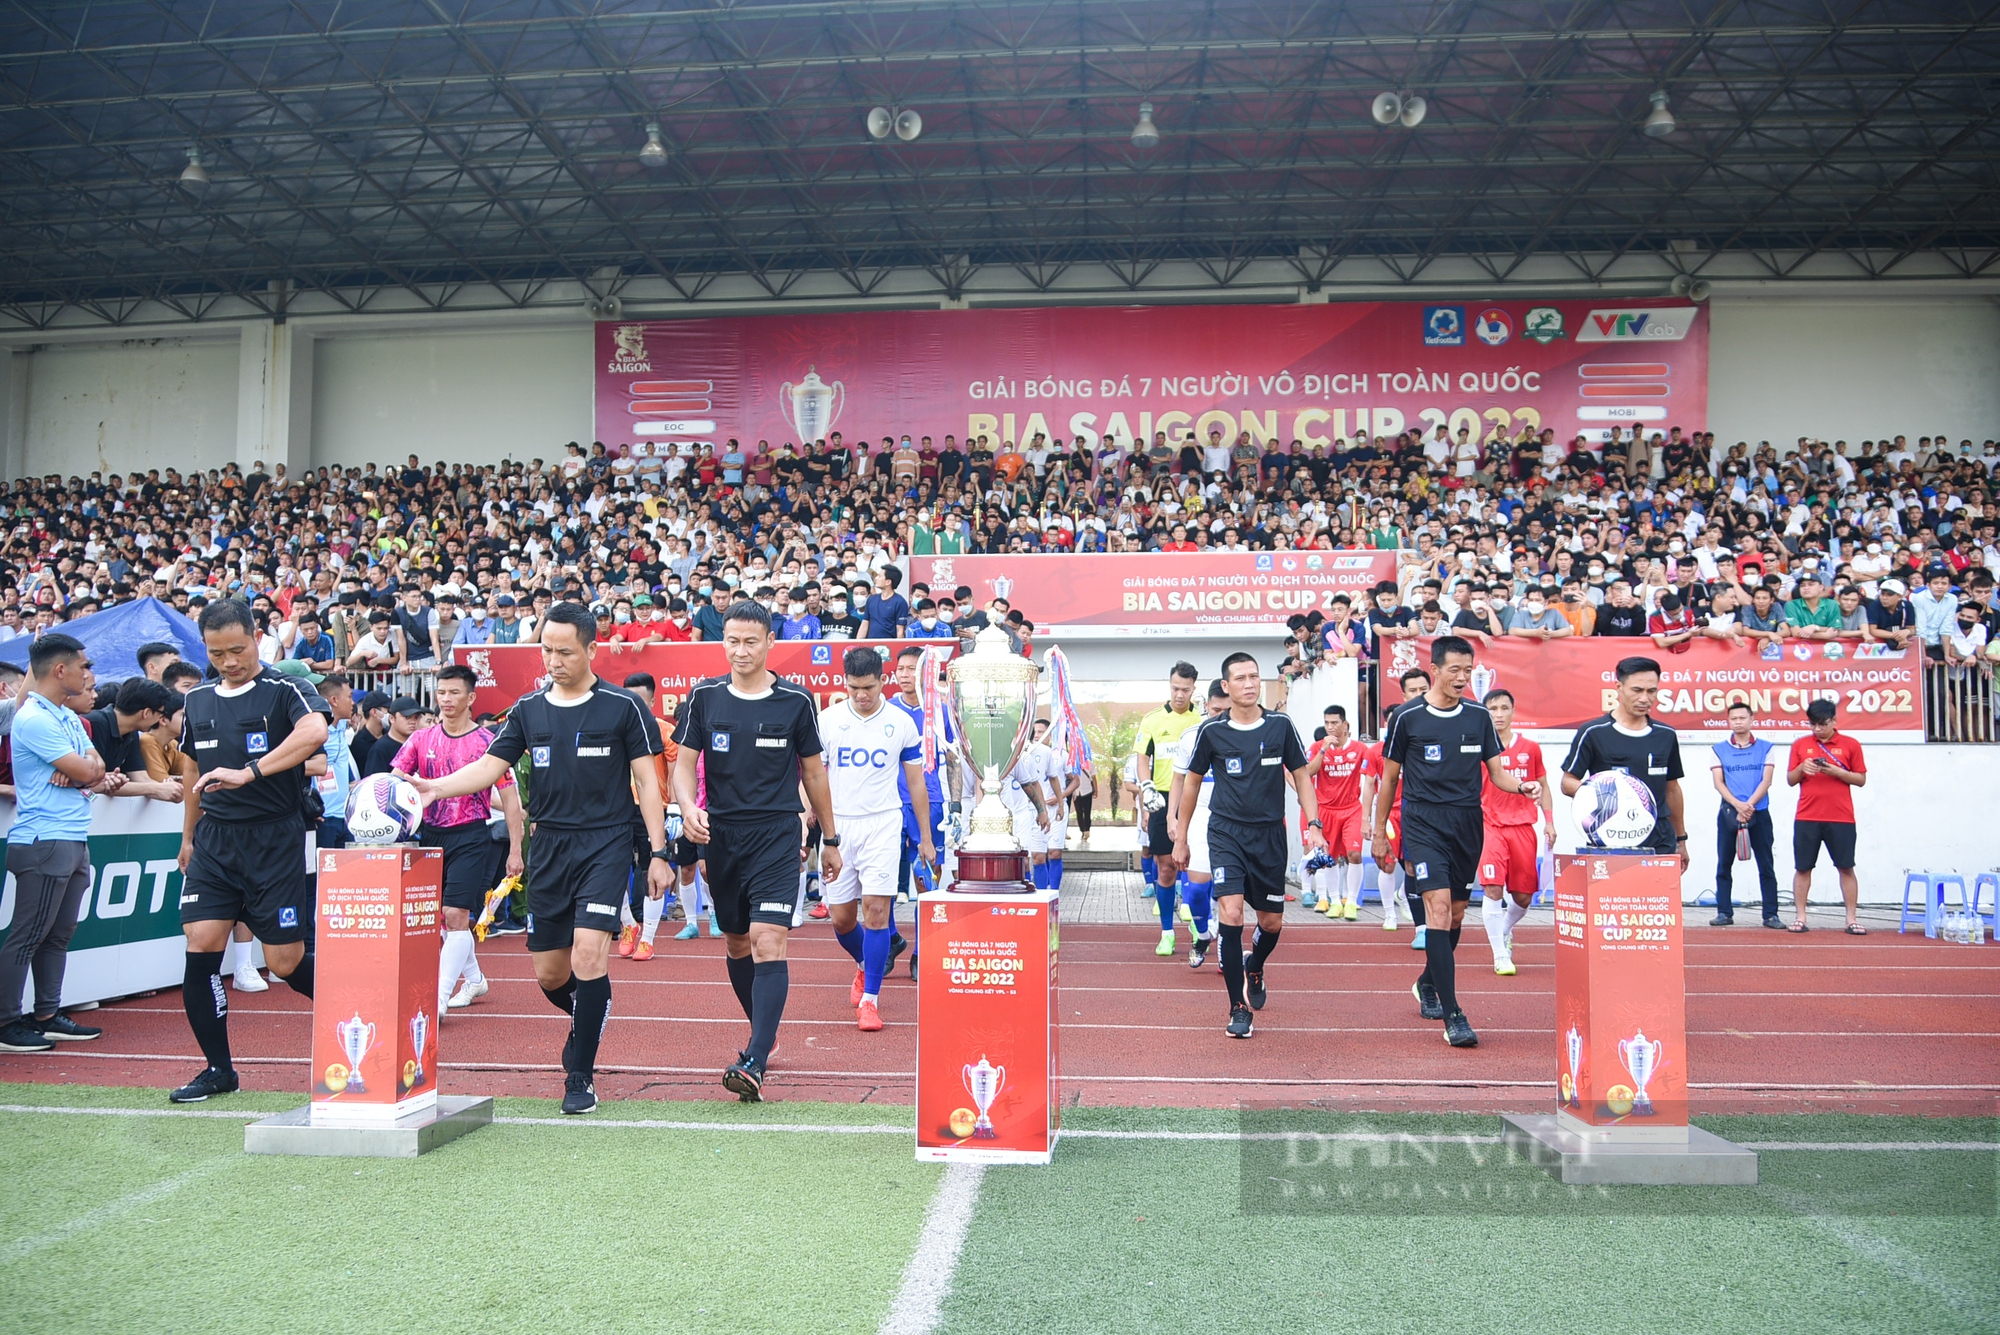 FC Đạt Tín trở thành tân Giải bóng đá 7 người vô địch toàn quốc năm 2022 - Ảnh 1.